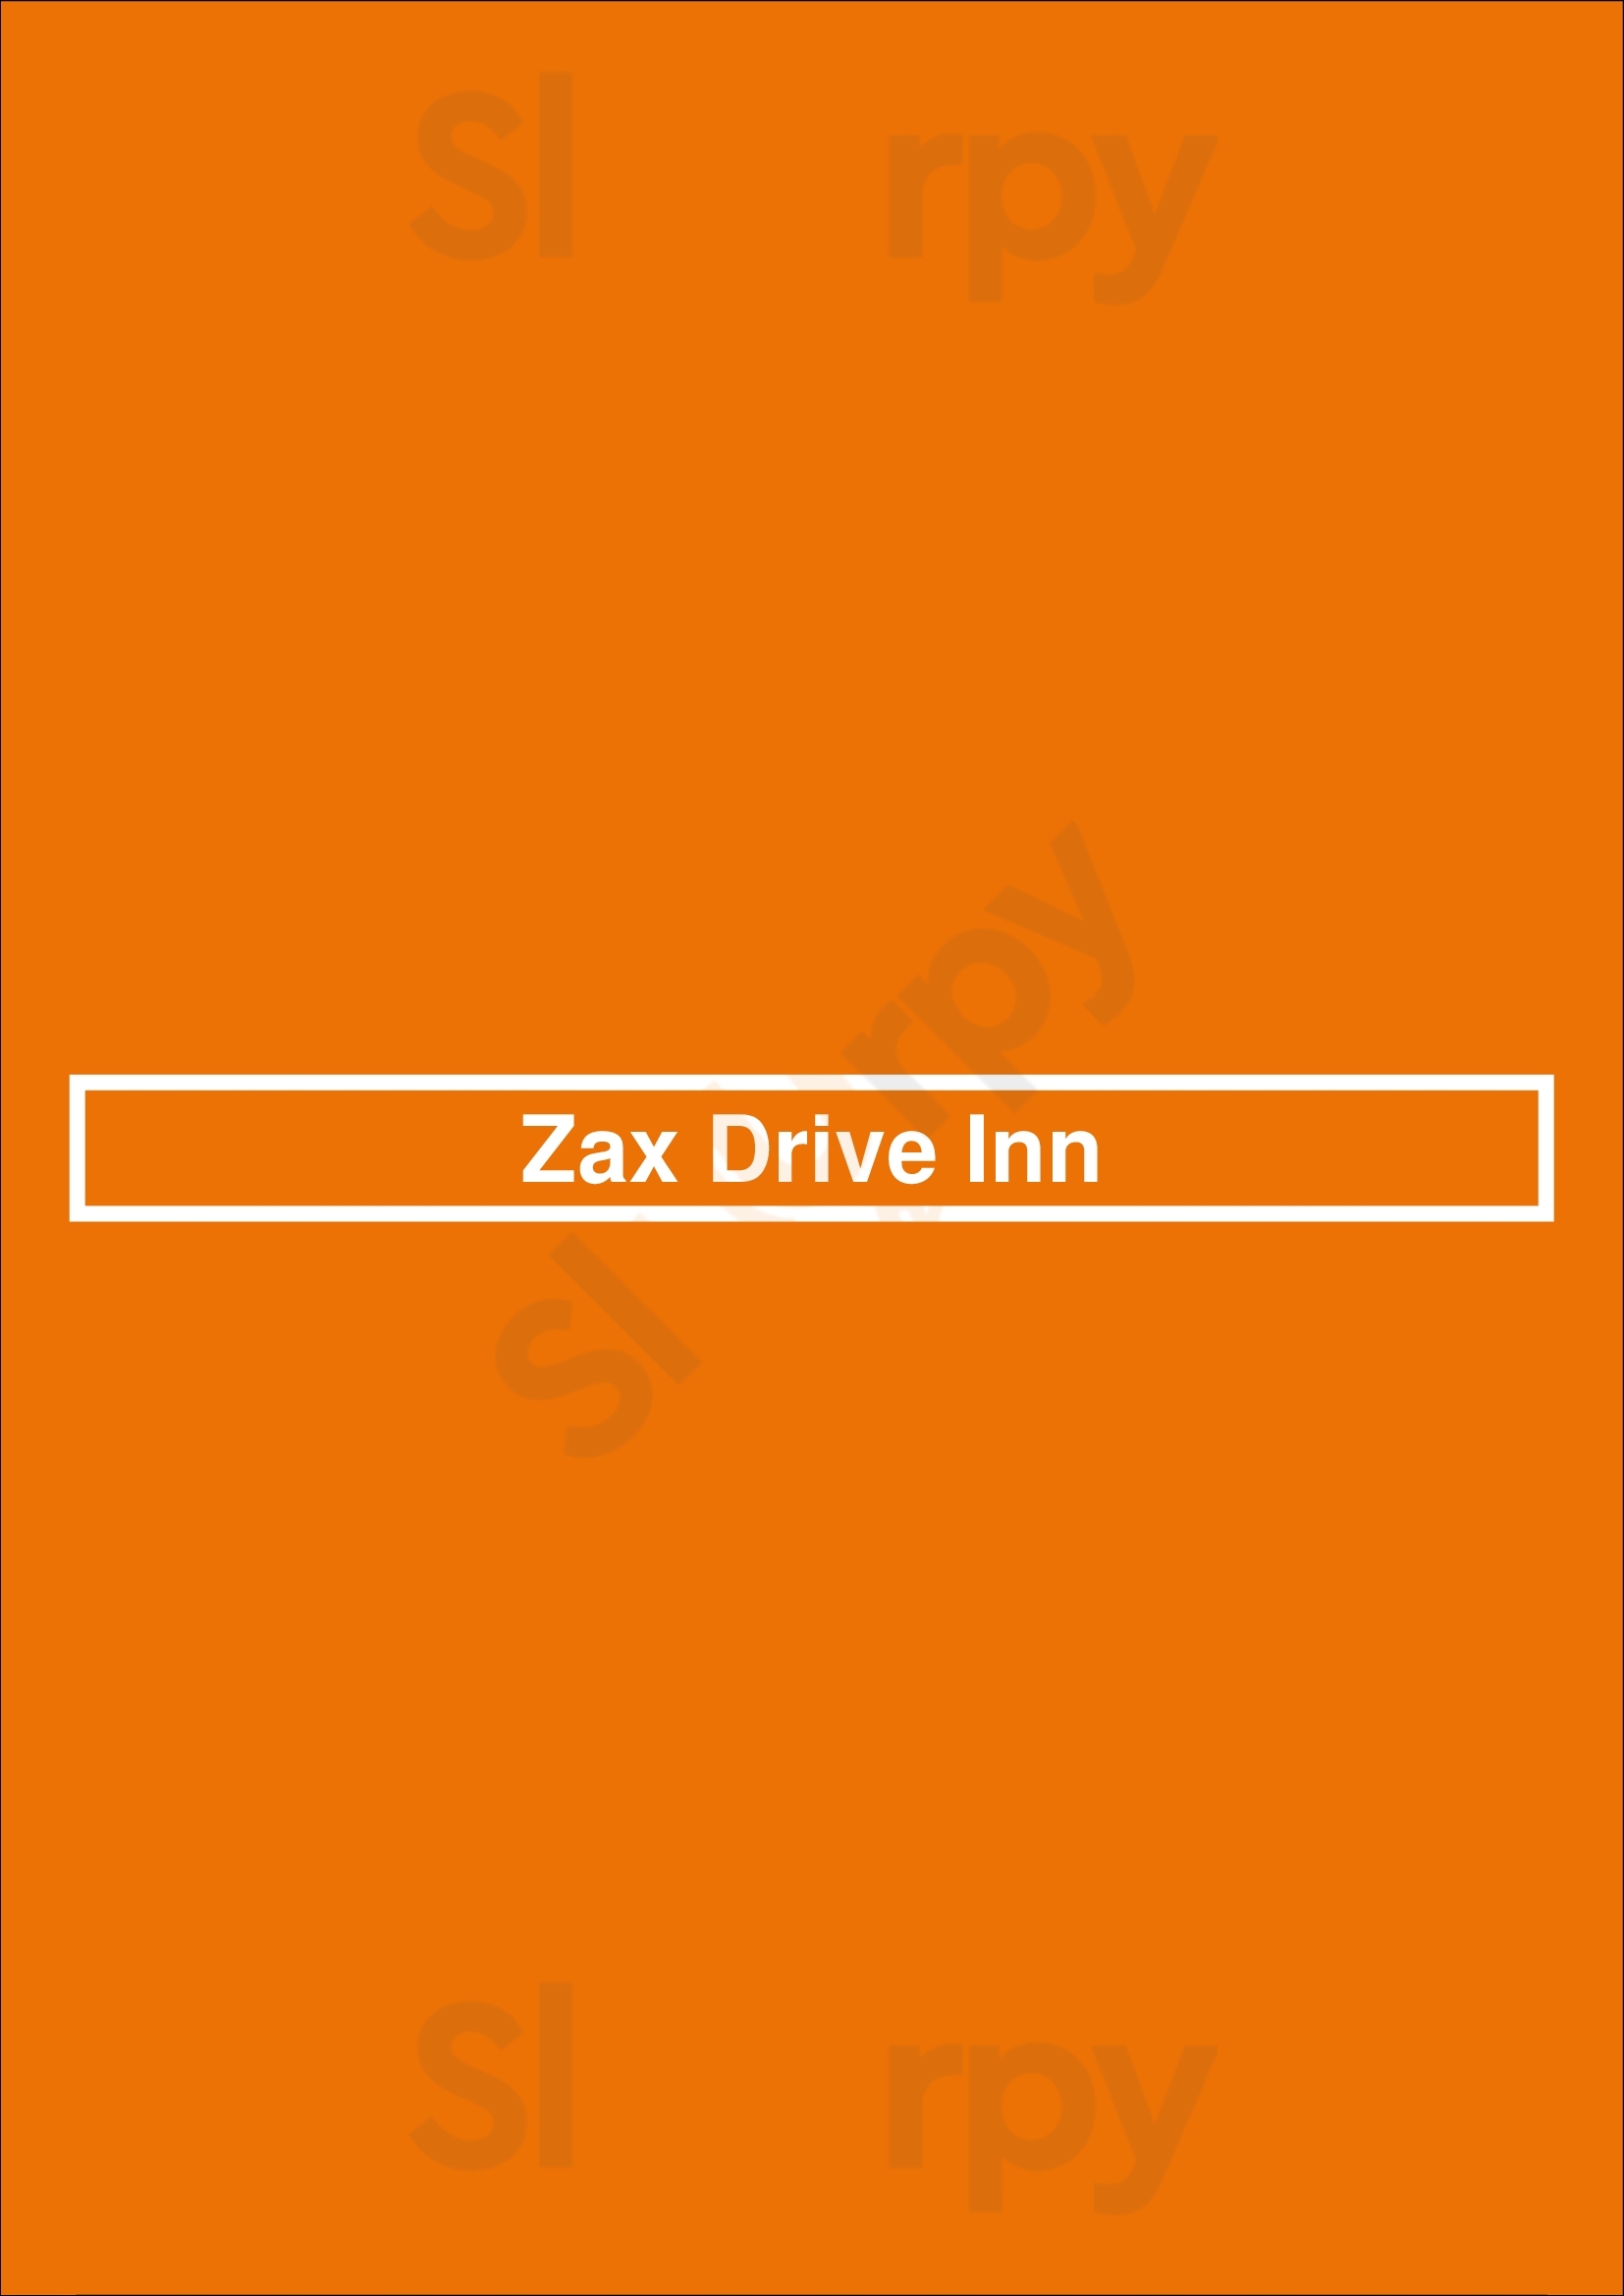 Zax Drive Inn Winnipeg Menu - 1